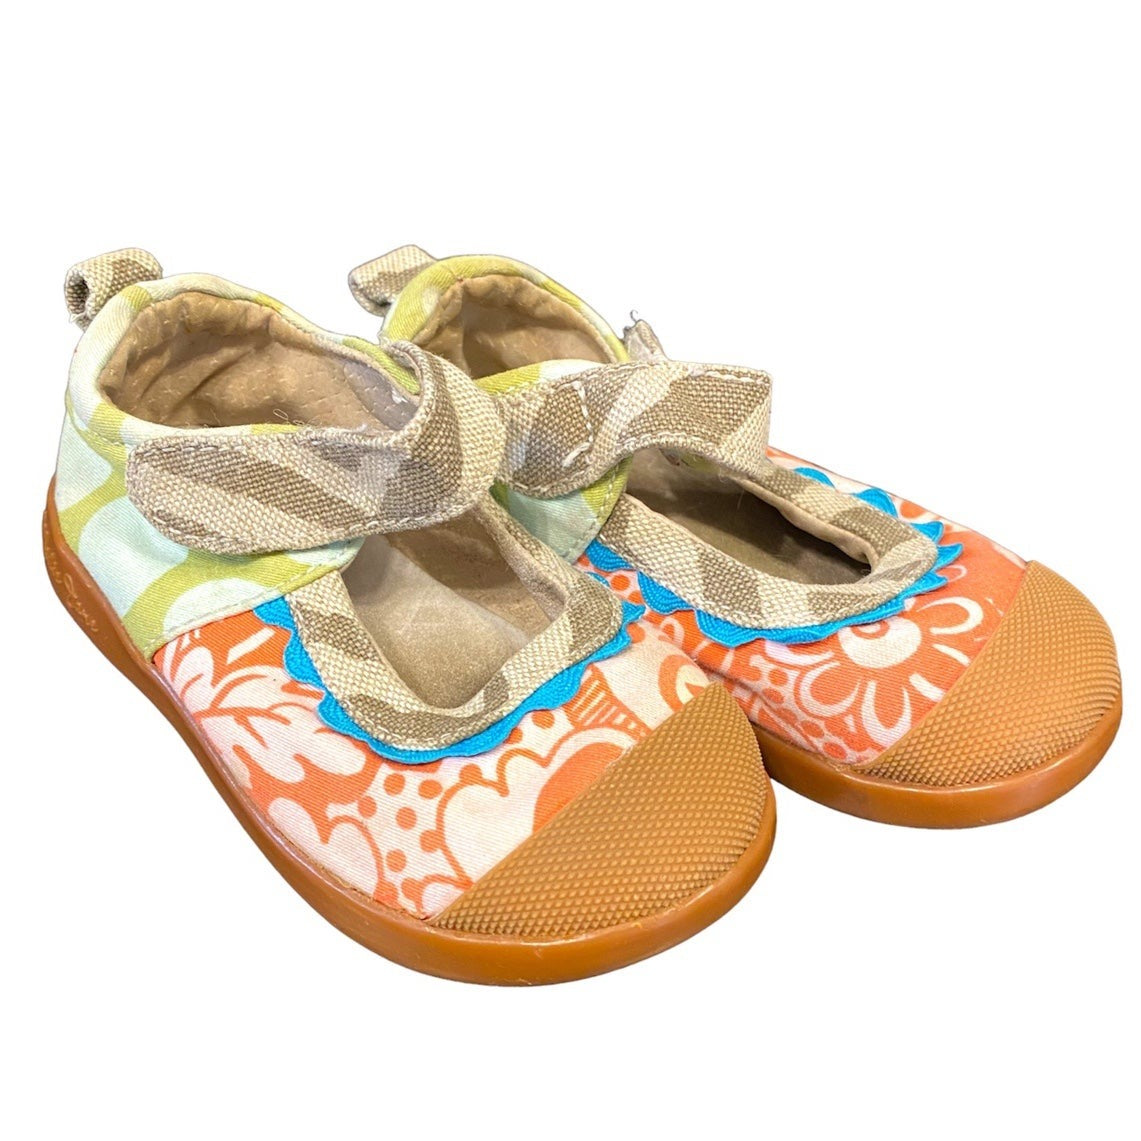 Size 4 Madie Jane toddler girls shoes